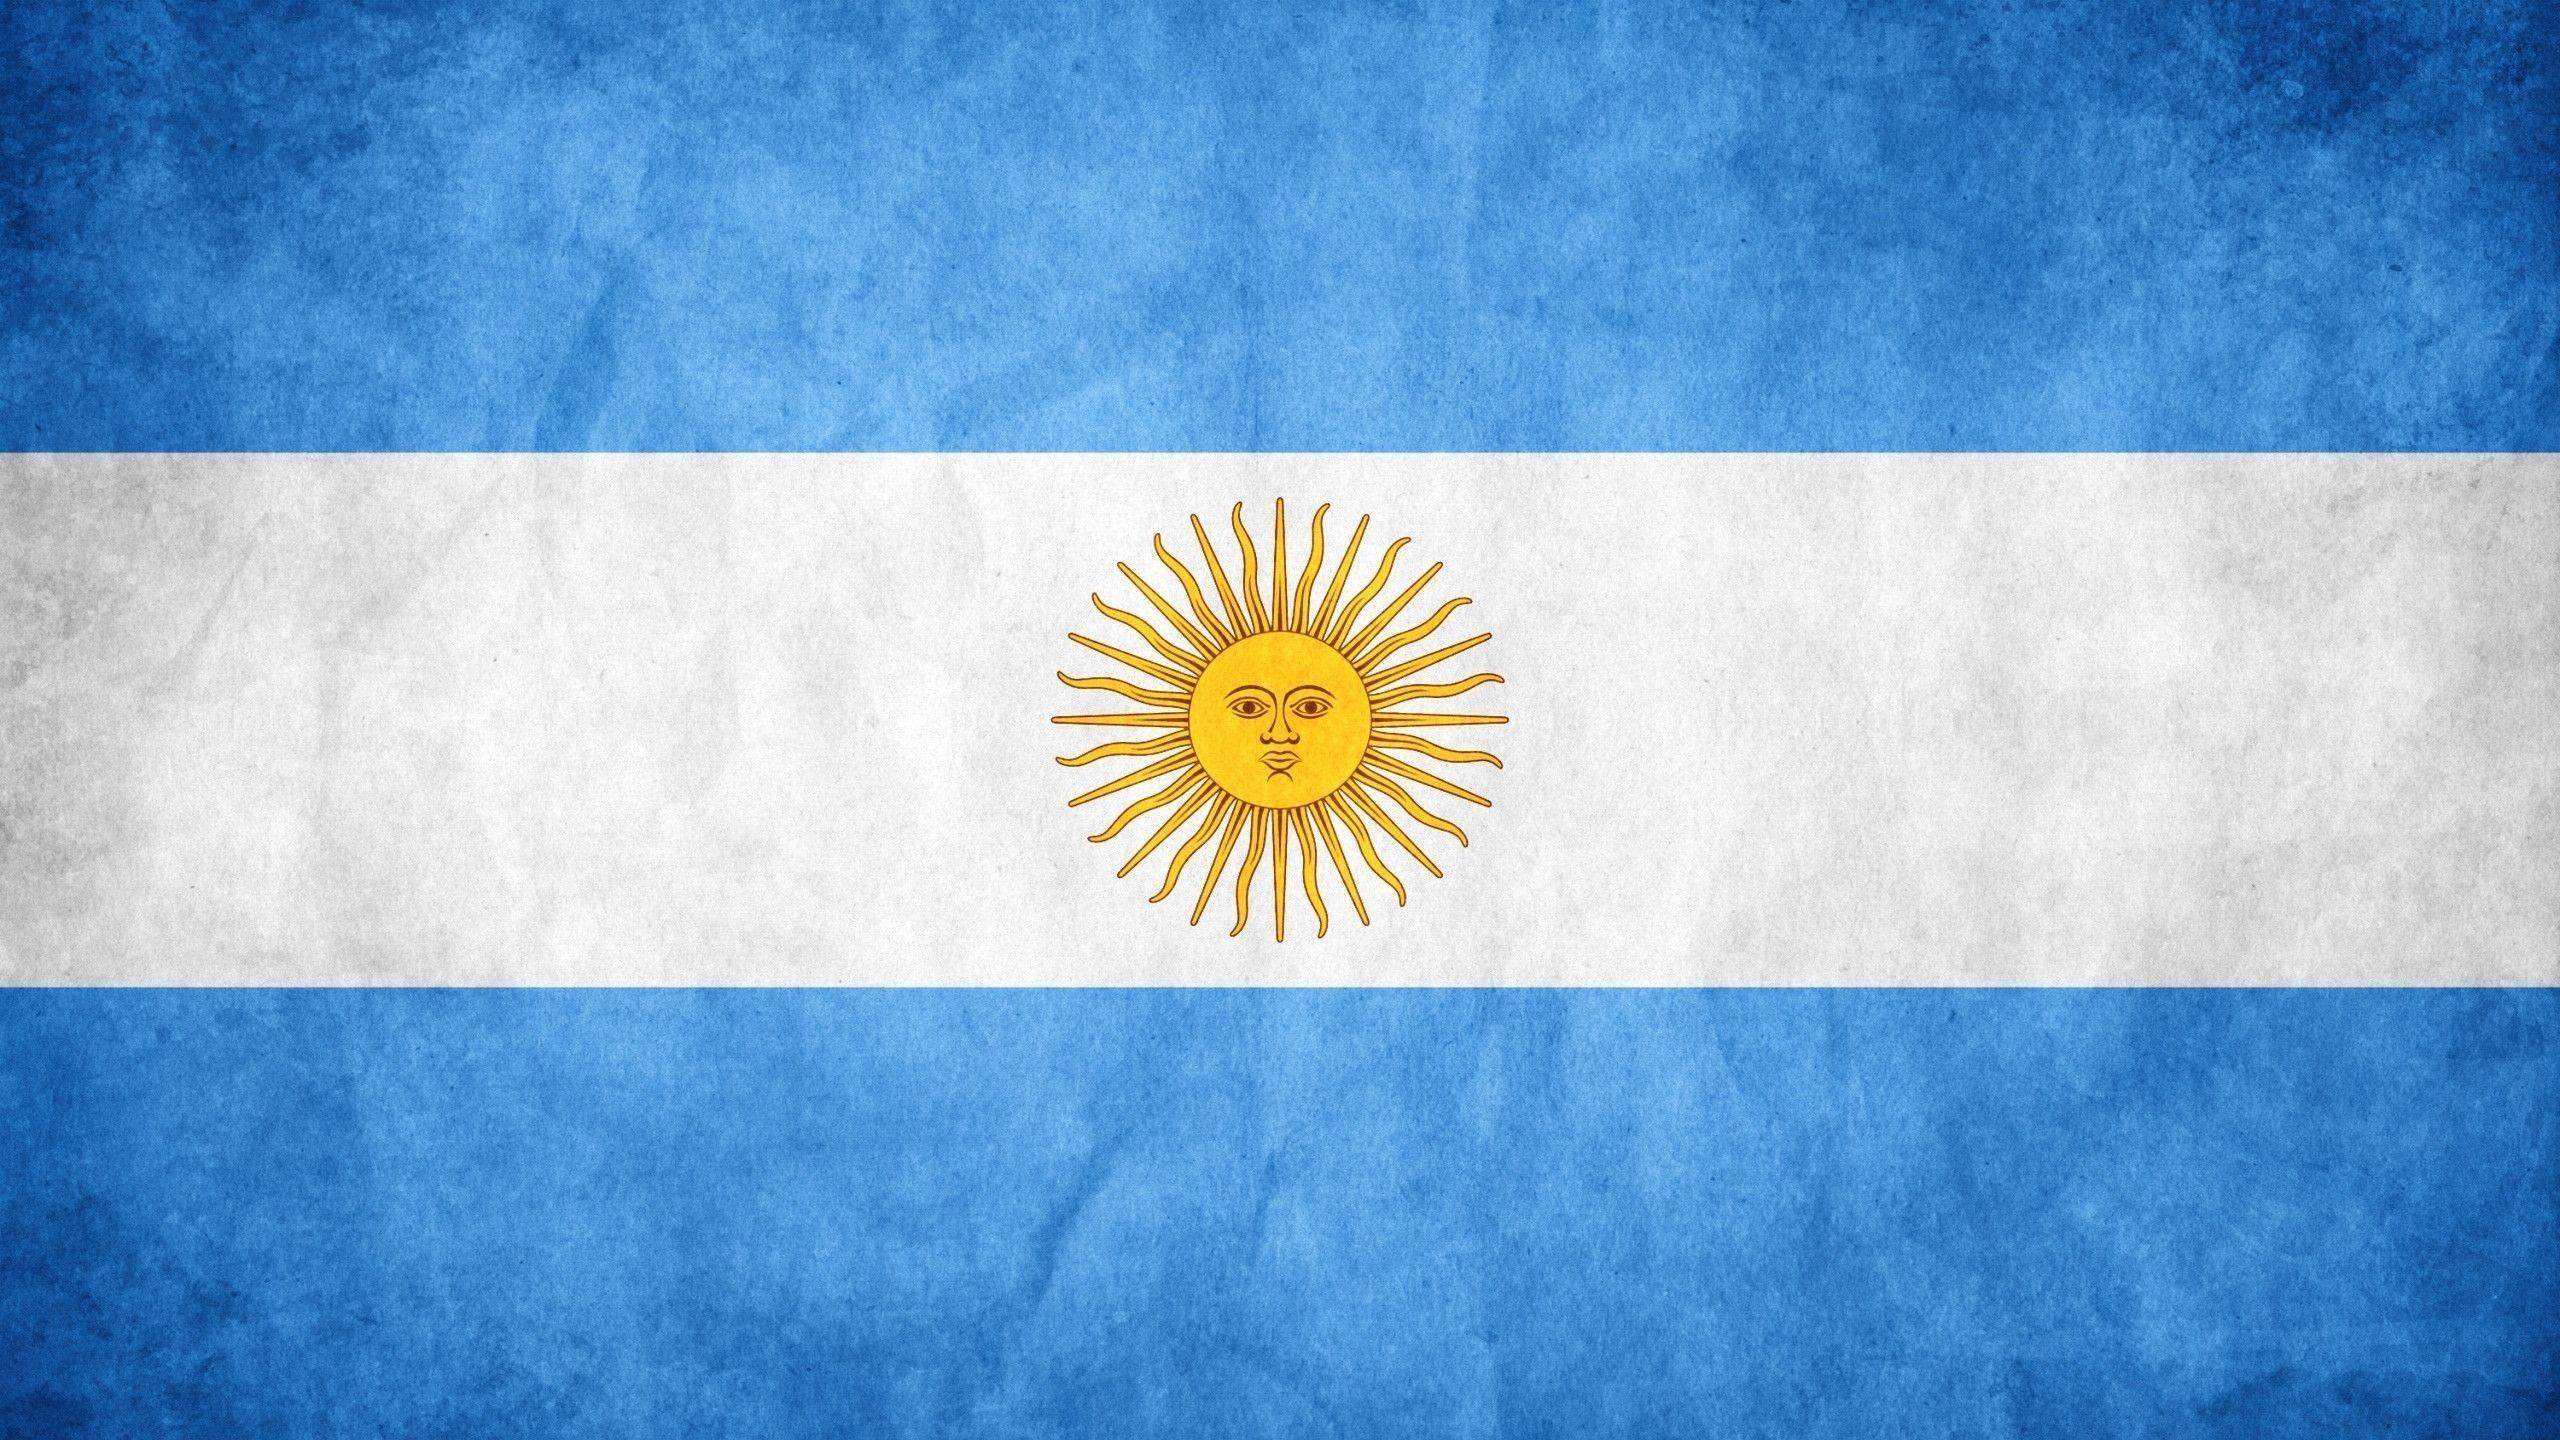 Fondos de pantalla de la bandera argentina - FondosMil